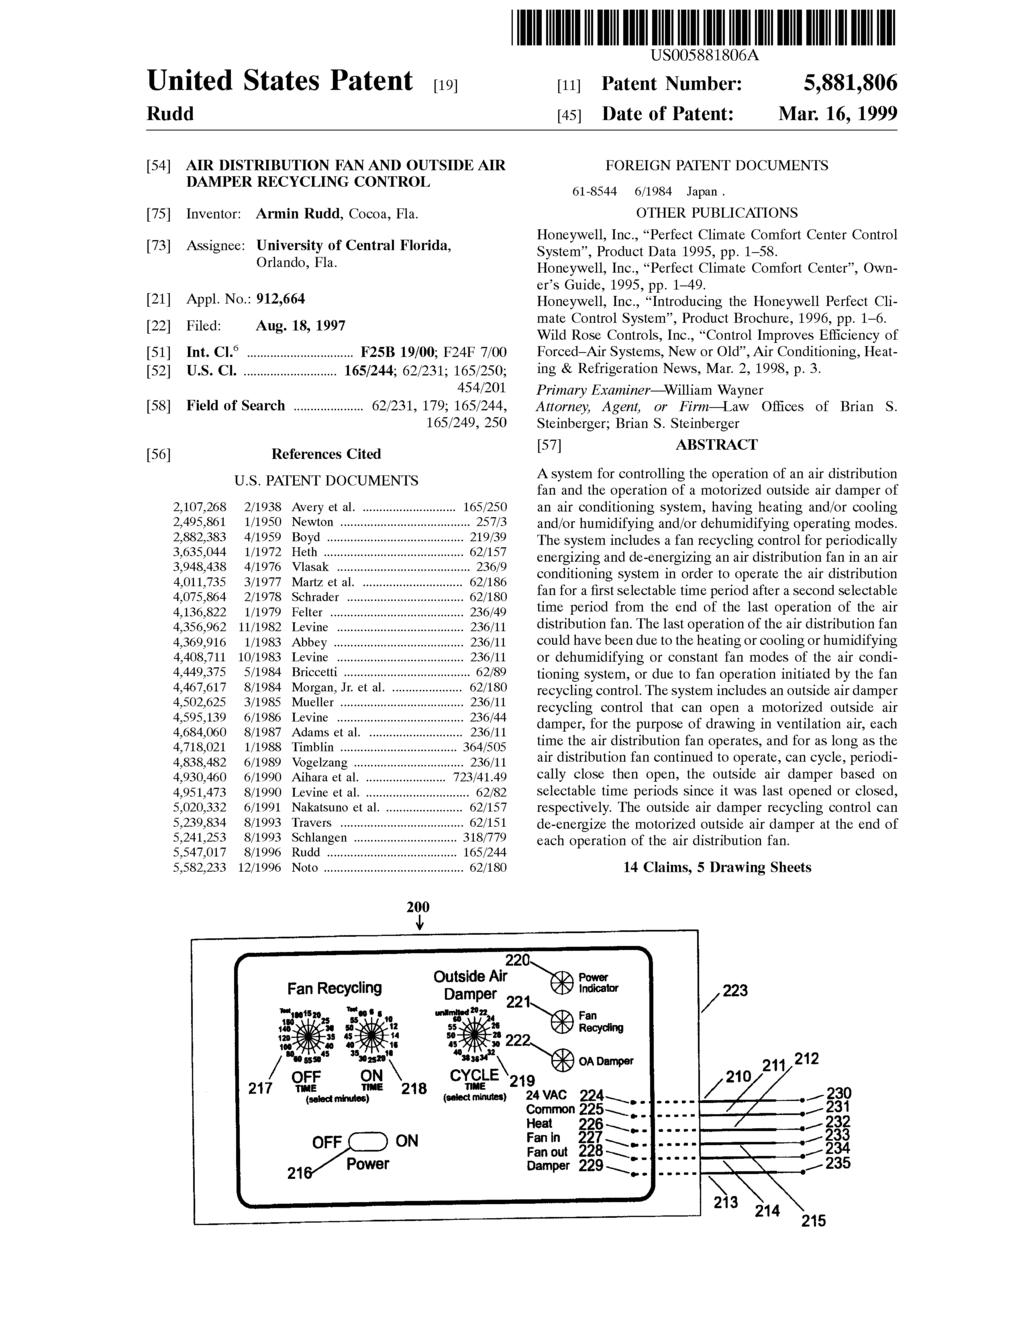 United States Patent [19J Rudd I lllll llllllll Ill lllll lllll lllll lllll lllll 111111111111111111111111111111111 US5881806A [11] Patent Number: 5,881,806 [45] Date of Patent: Mar.